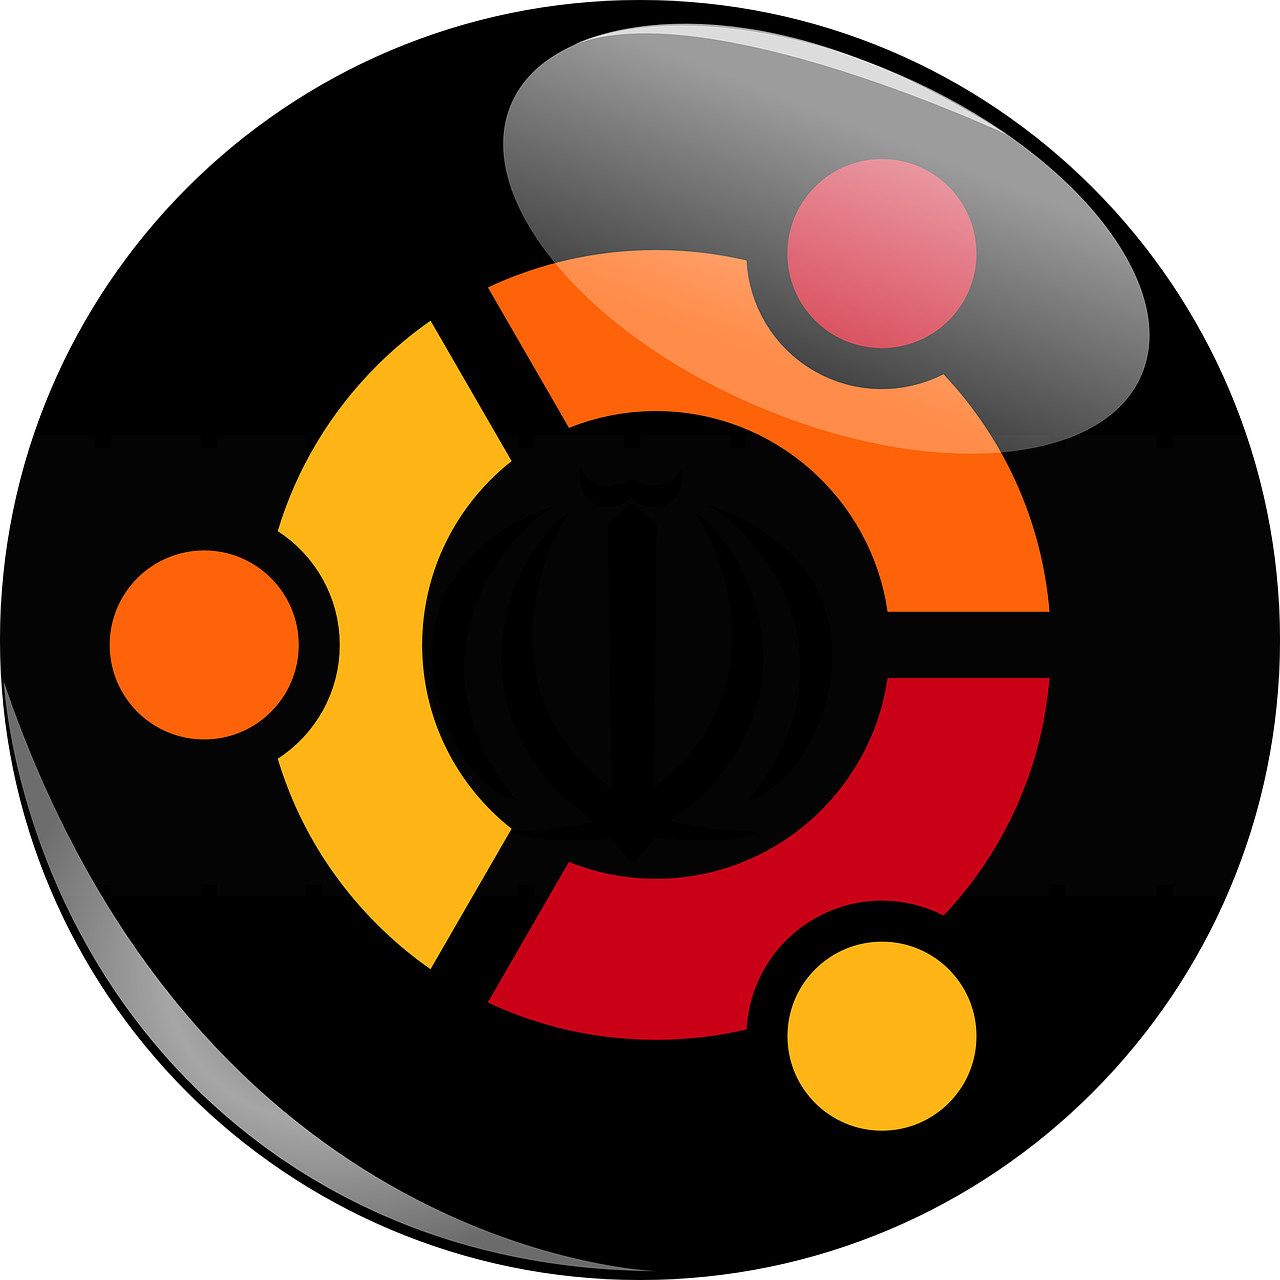 ubuntu logo ubuntu logo free photo